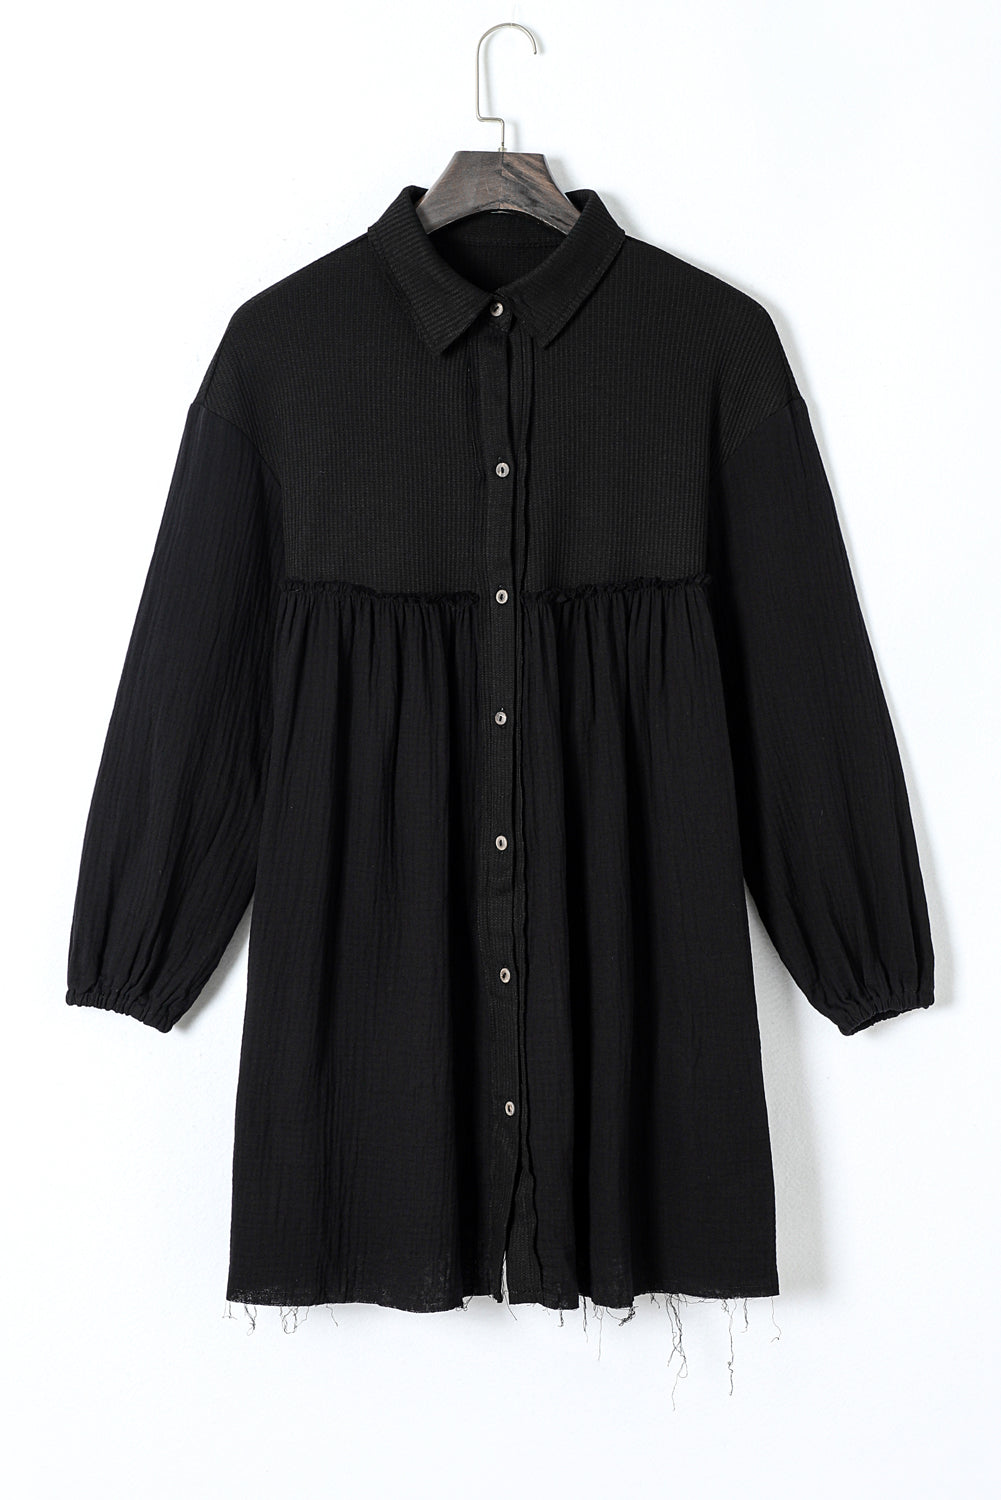 Crna haljina košulje s puf rukavima od krpica